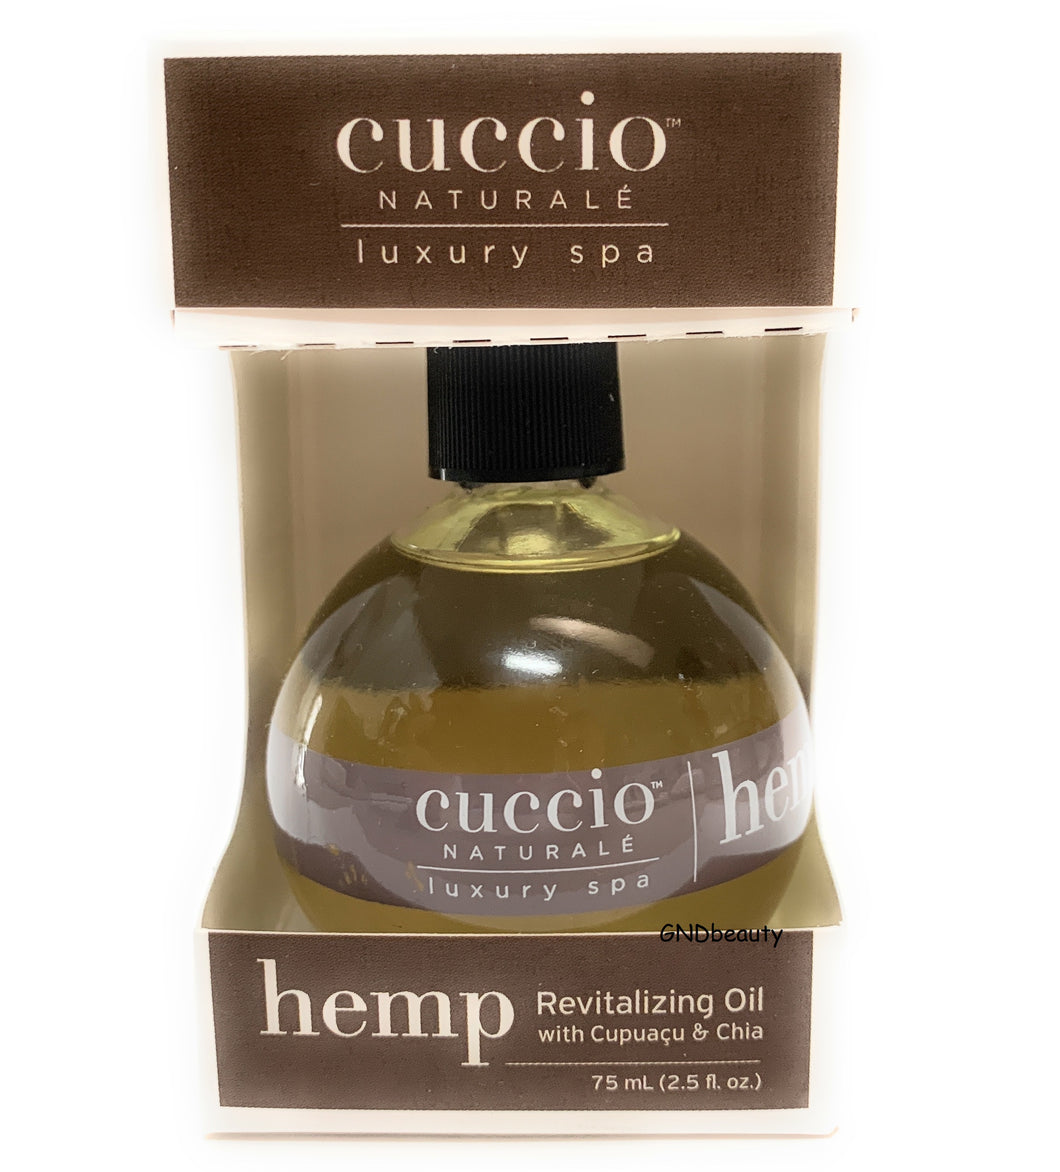 Cuccio Naturale HEMP Revitalizing Oil with Cupuacu and Chia 2.5 fl.oz